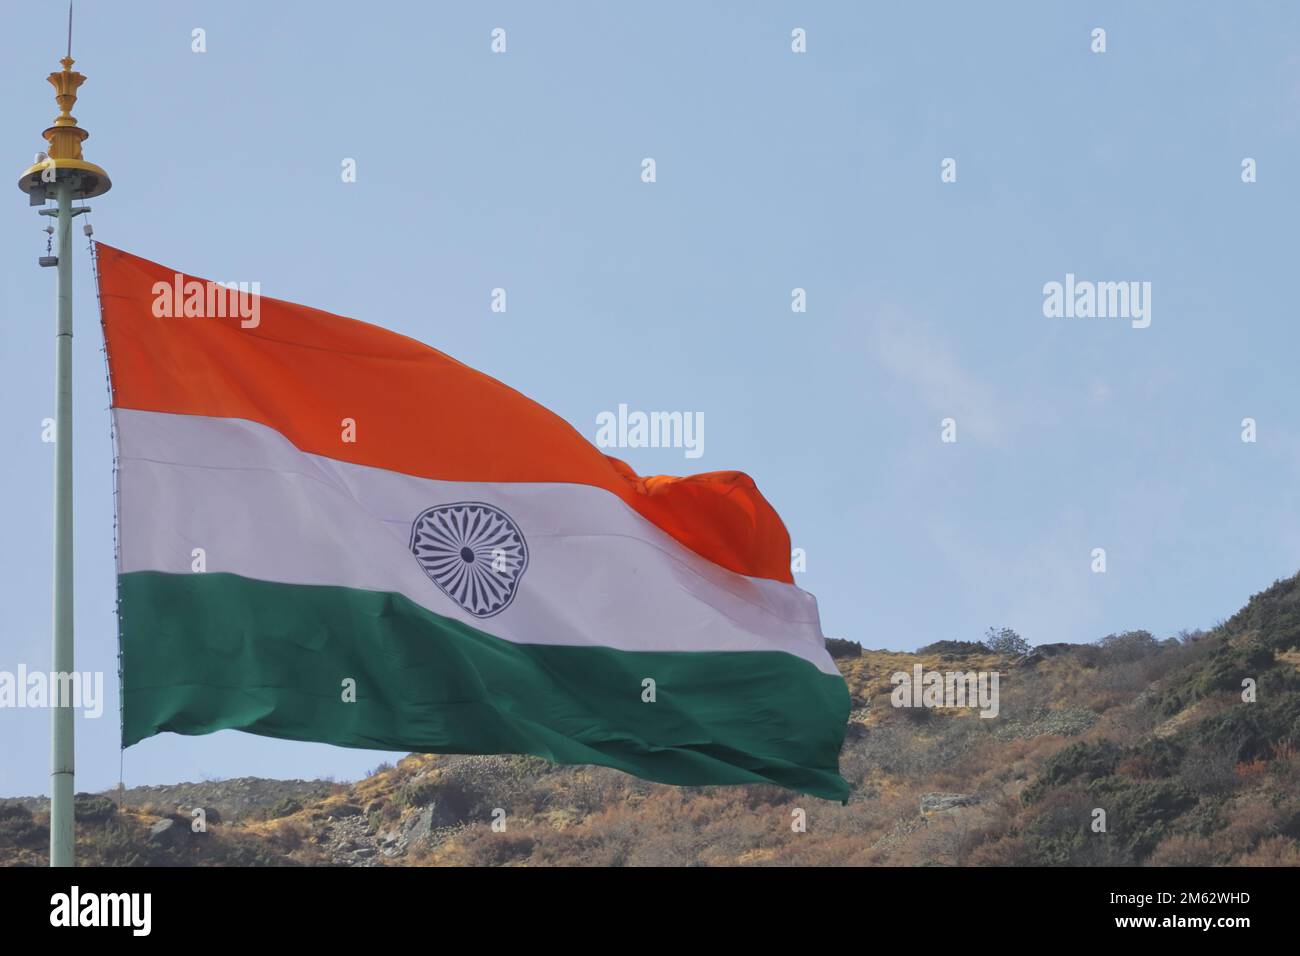 Die dreifarbige indische Flagge, die im Wind in der Nähe der indischen Grenze zur chinesischen Grenze in der Nähe des Doklam weht. Glücklicher tag der republik indien Stockfoto